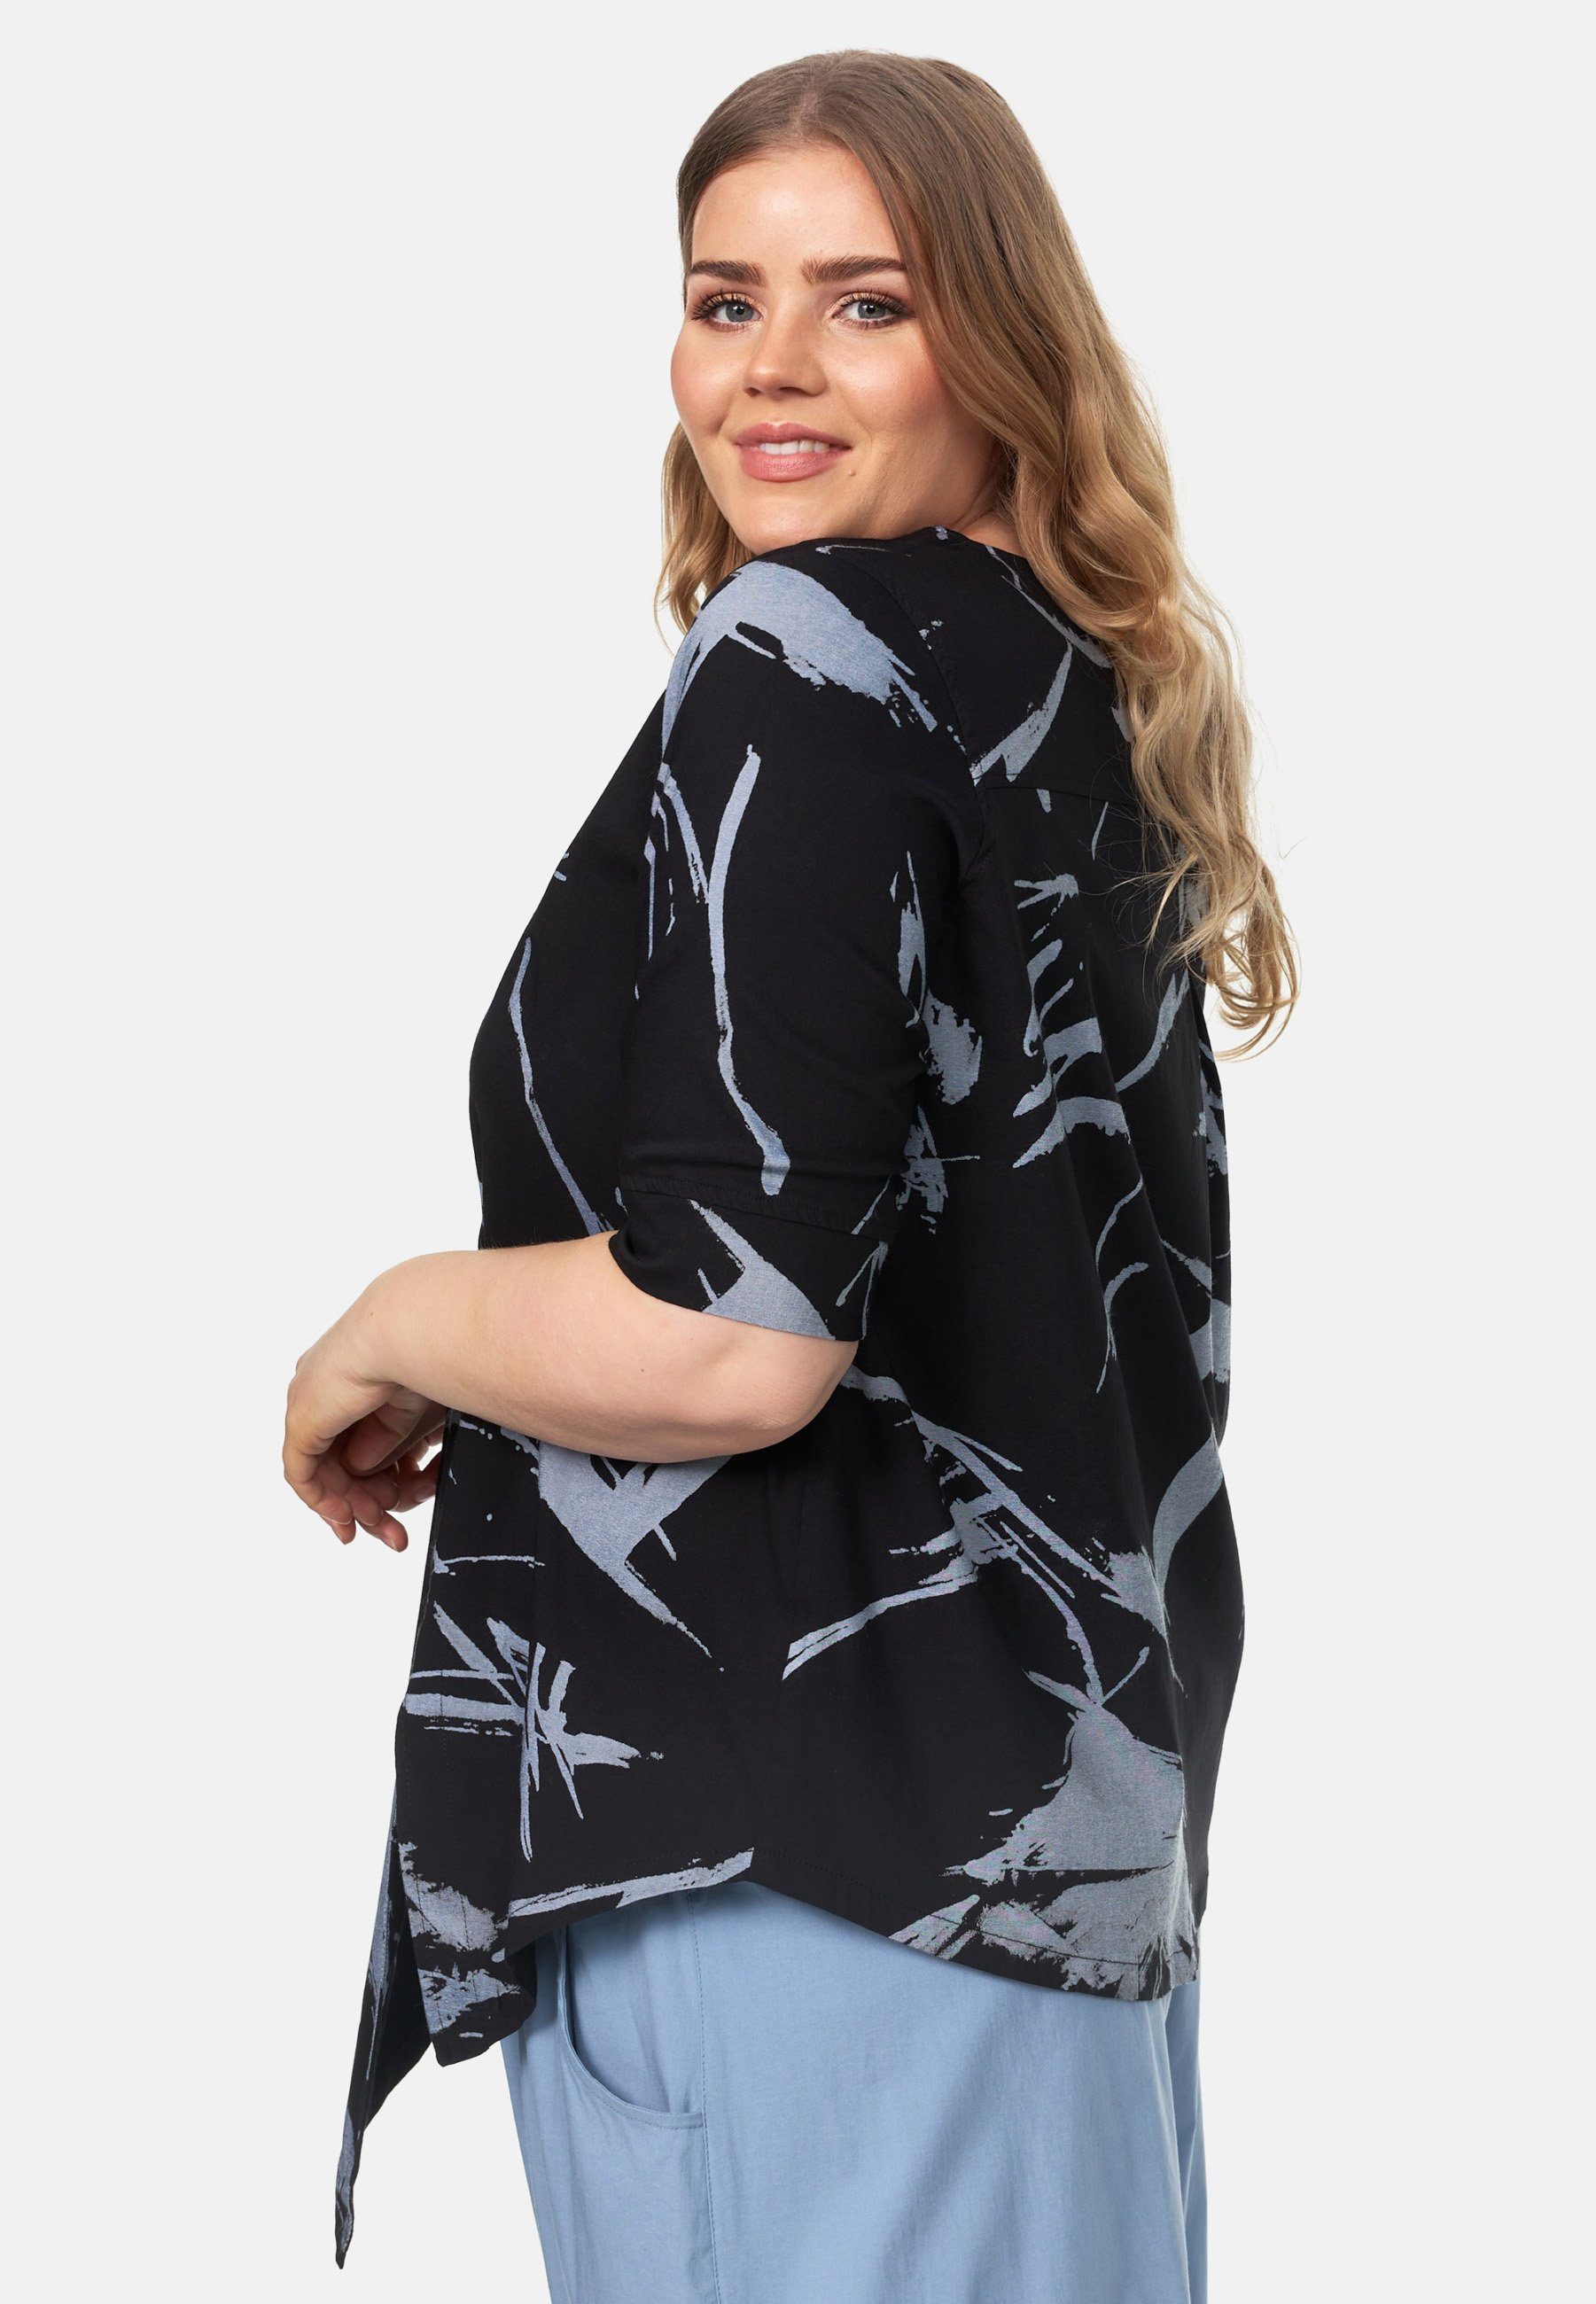 Schwarz mit Tunika in asymmetrischem Muster Kekoo 'Flora' Tunikashirt Saum A-Line Shirt